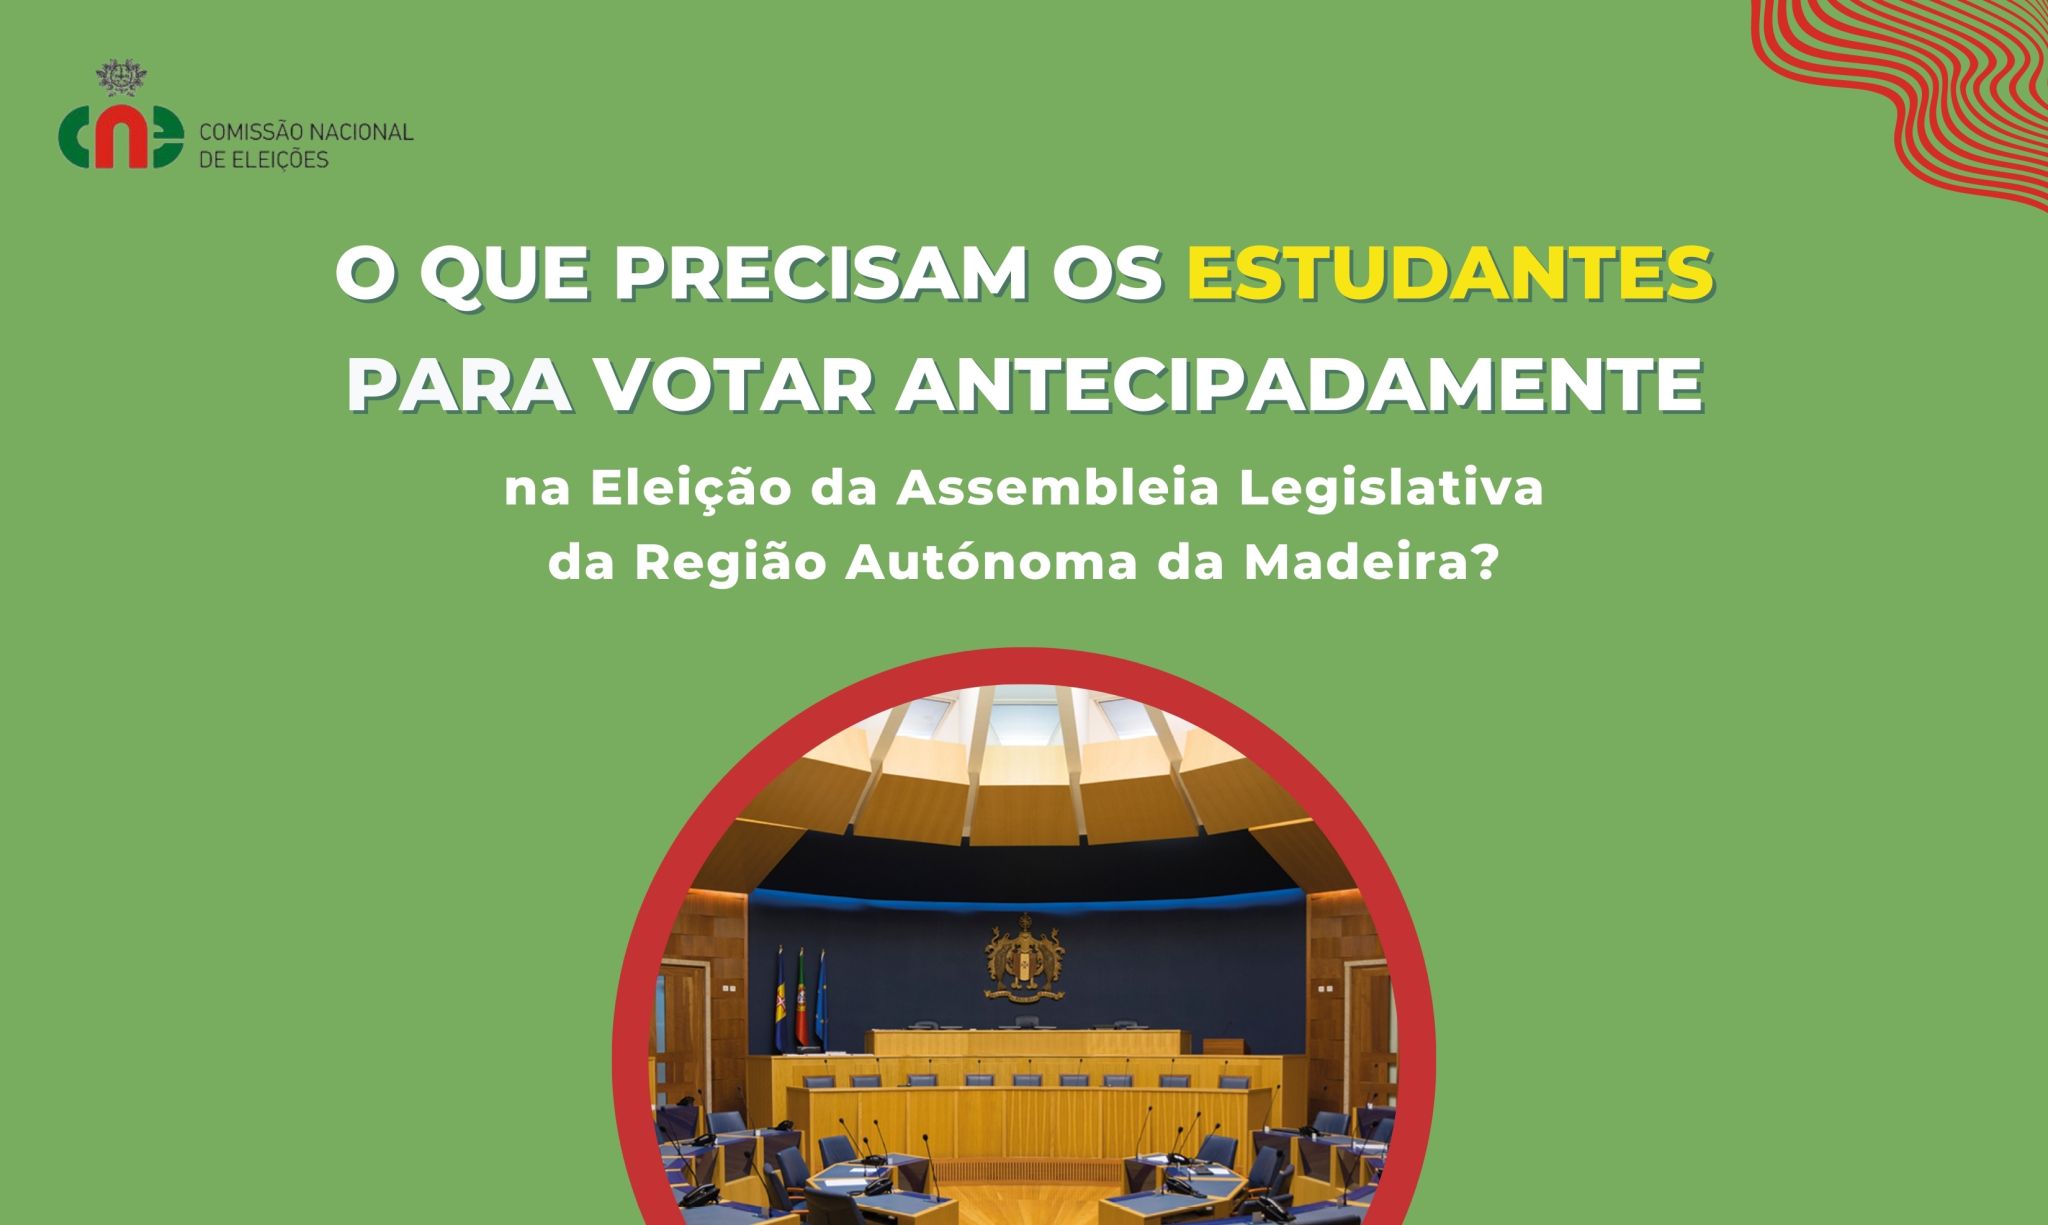 Eleição para a Assembleia Legislativa da Região Autónoma da Madeira - Voto antecipado para estudantes recenseados na Madeira